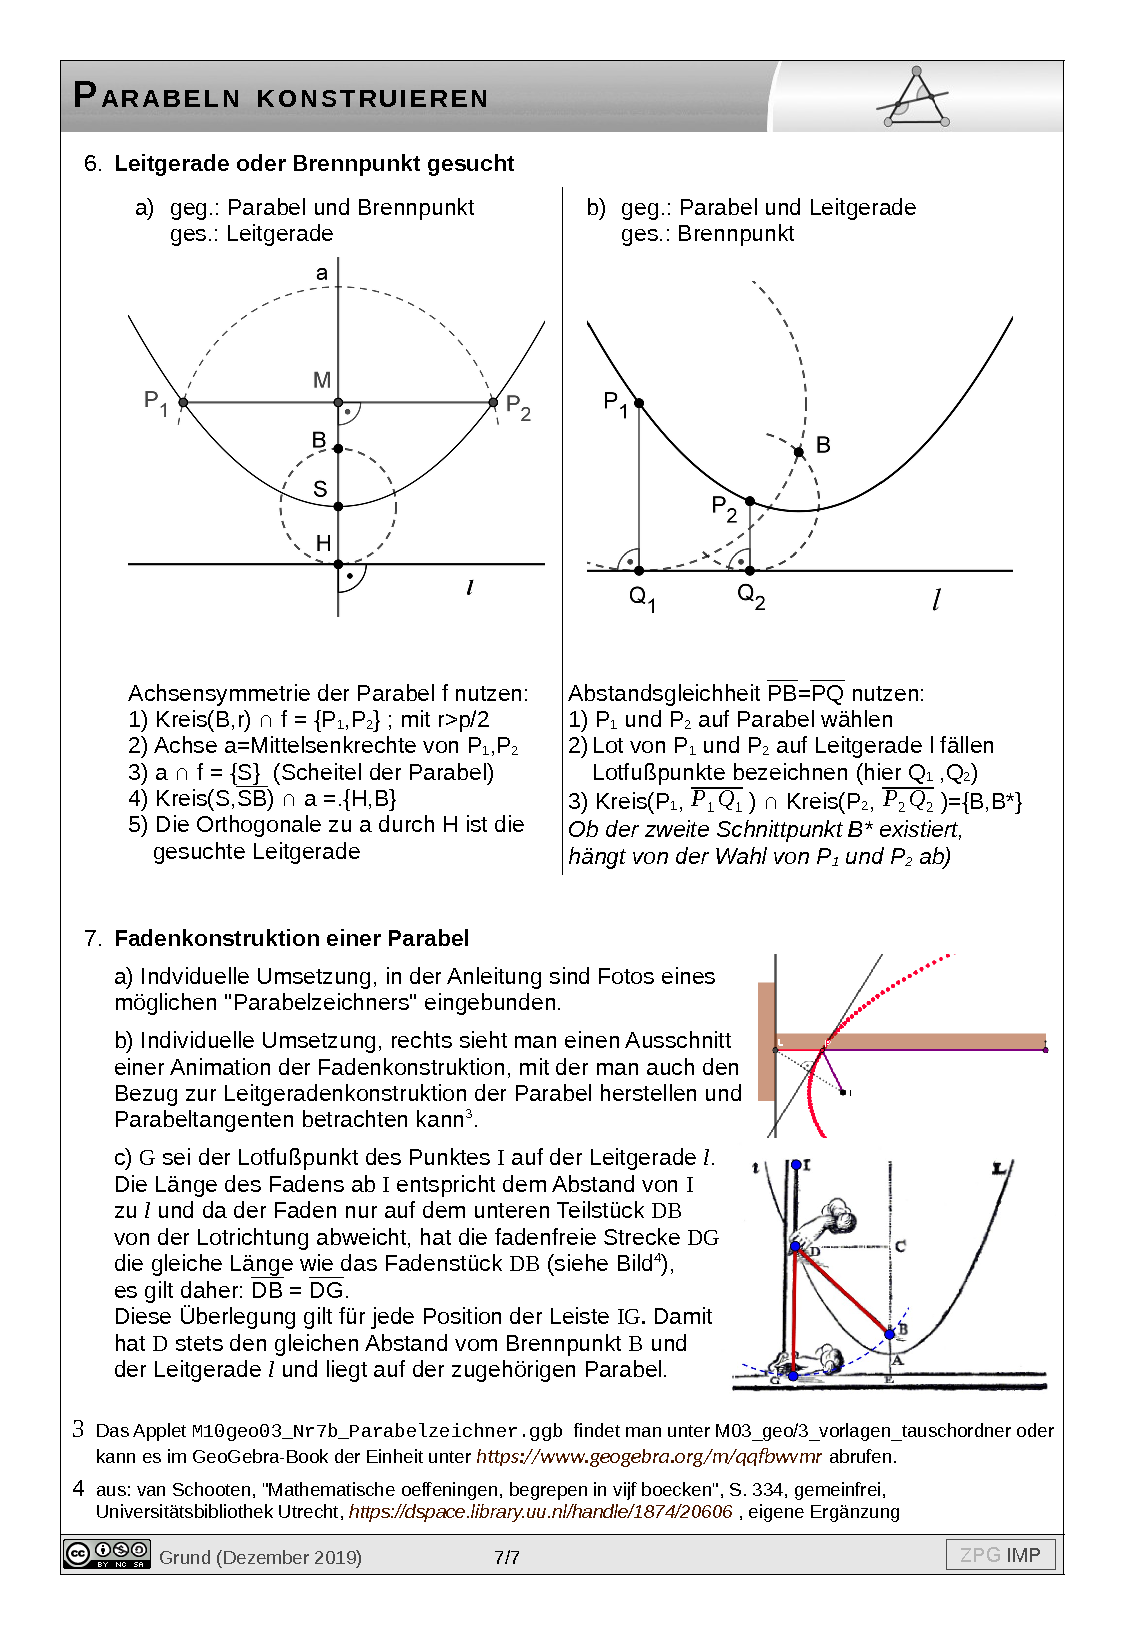 Parabeln kontruieren: Lösung, Seite 7